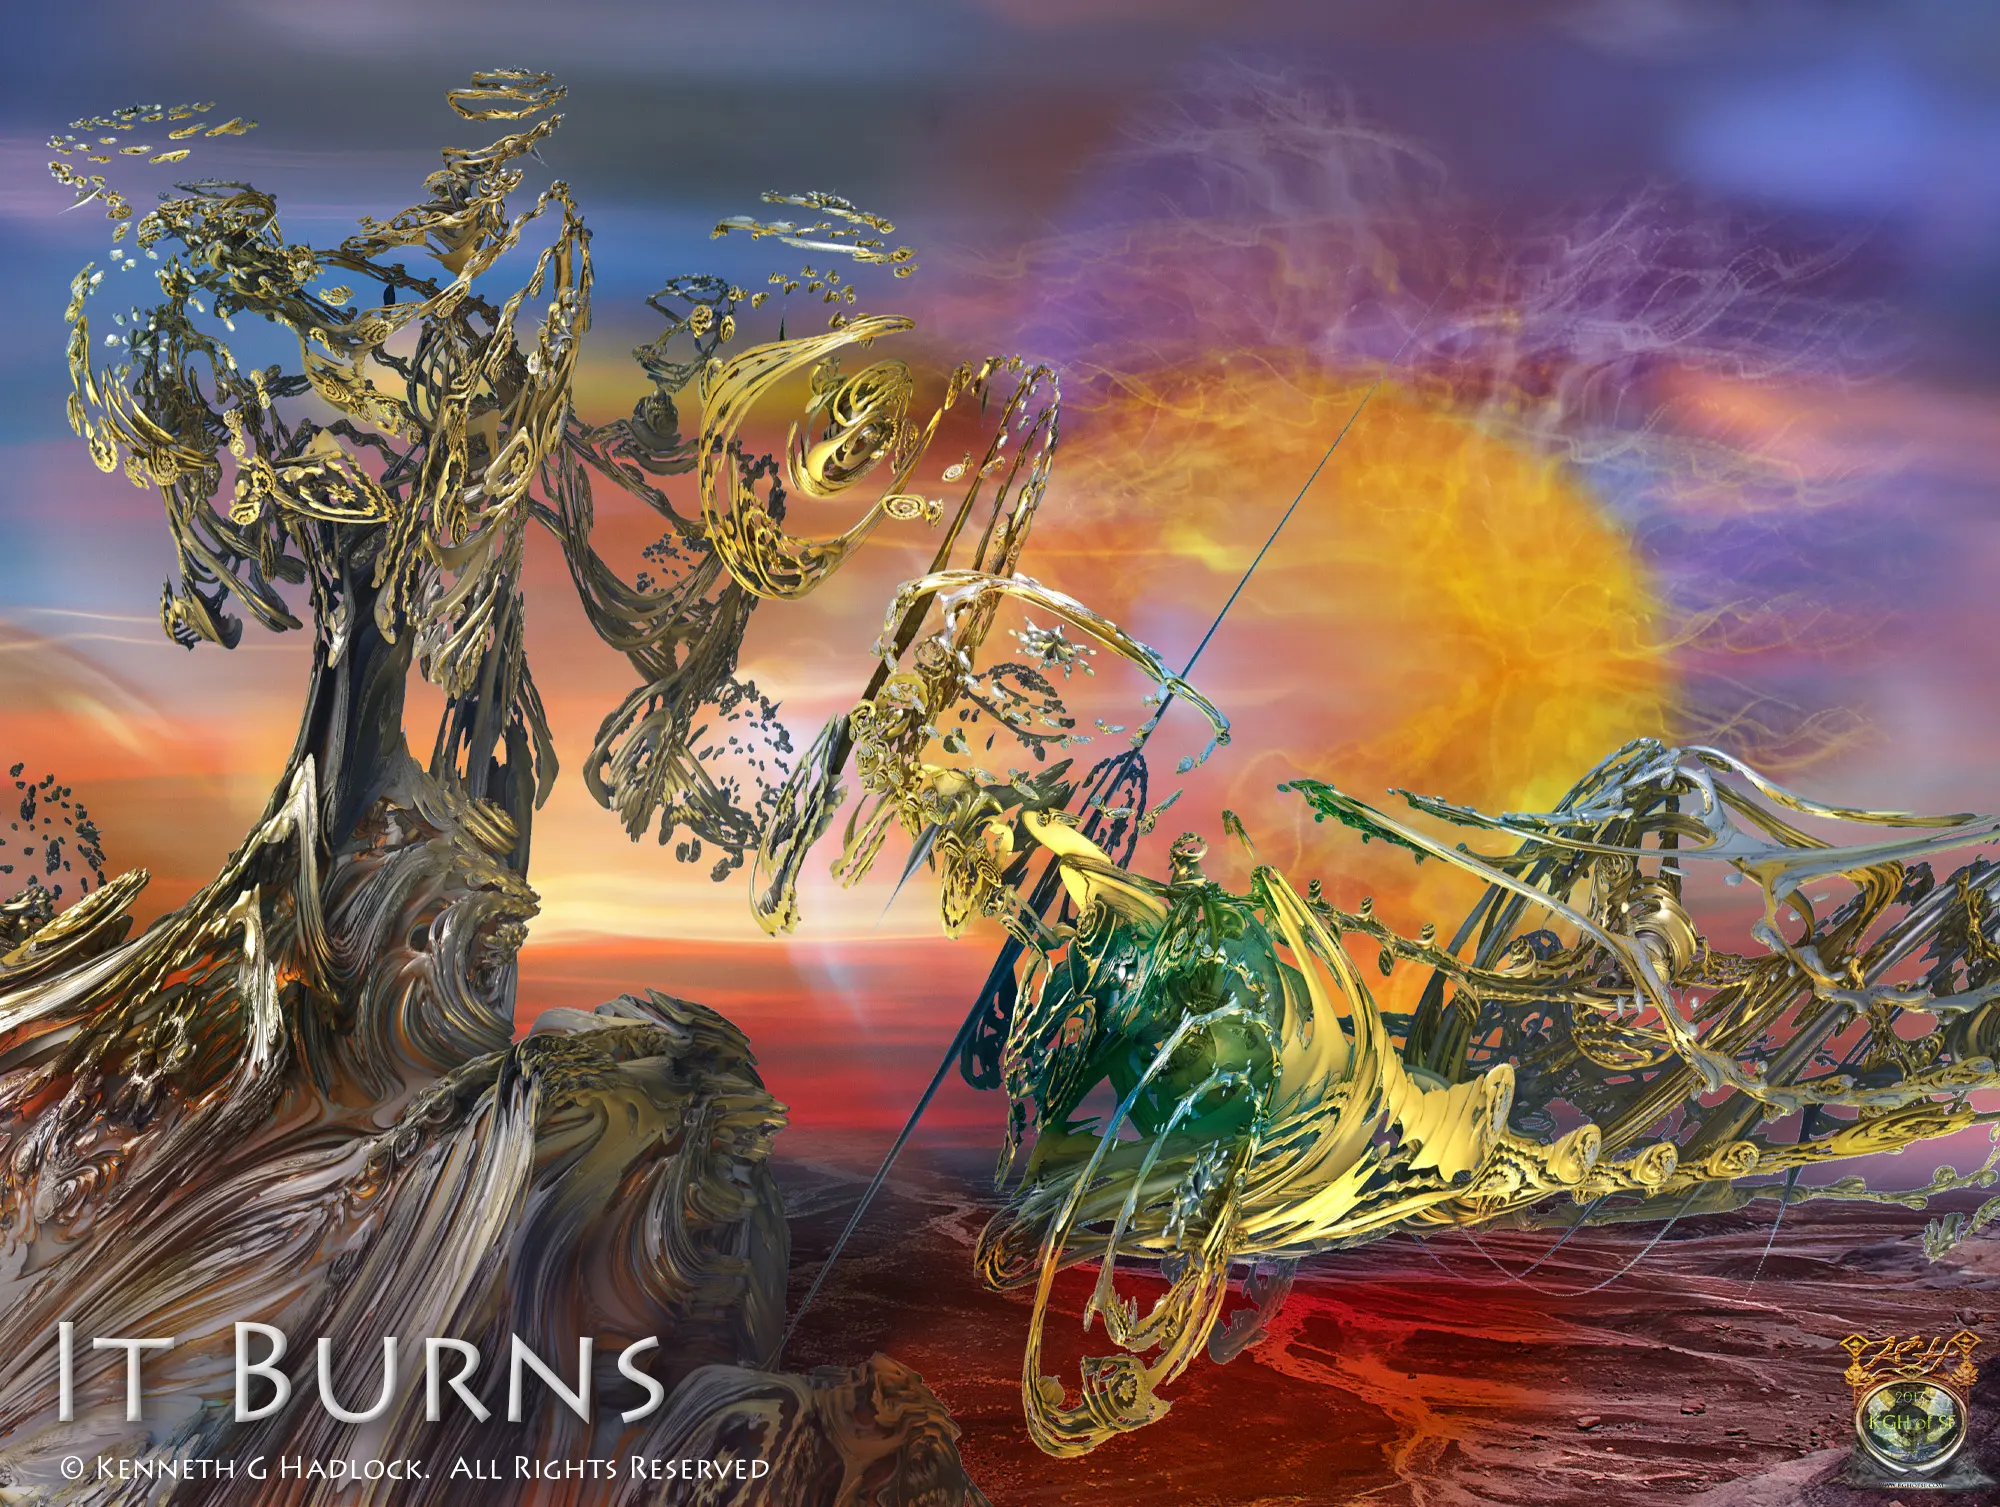 Digital Artwork - "It Burns"